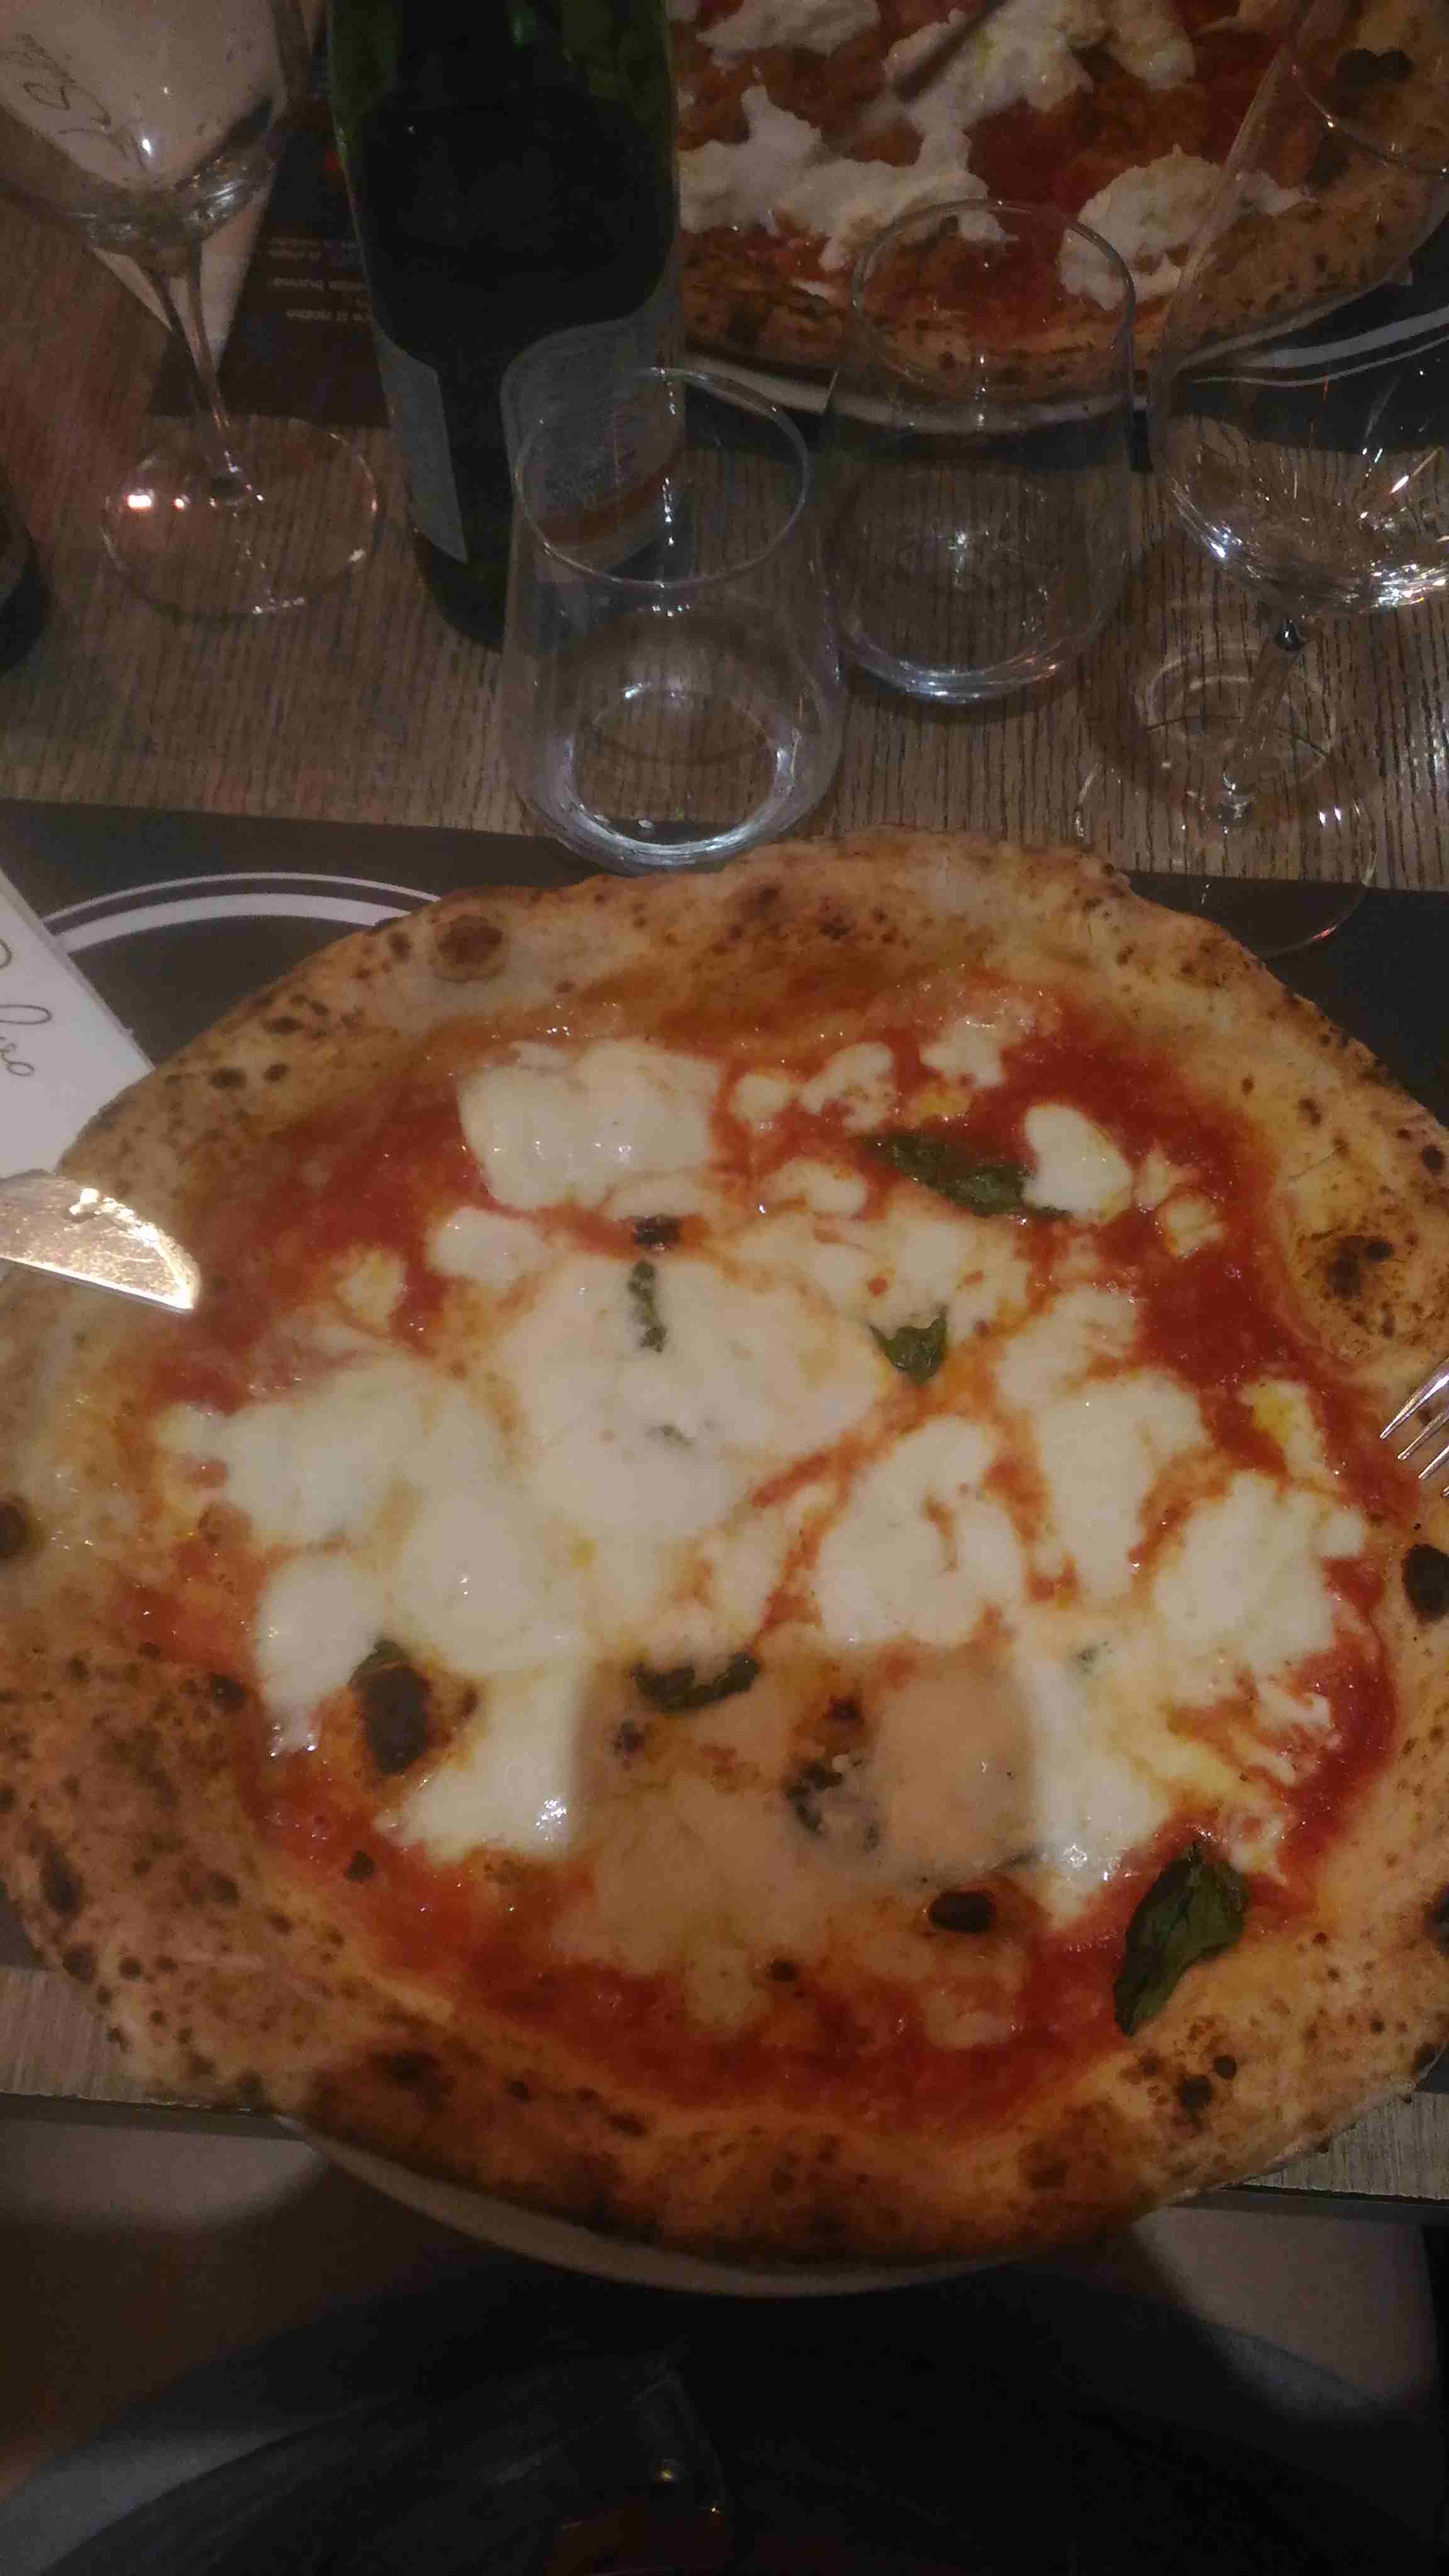 The classic margherita pizza with buffalo mozzarella.